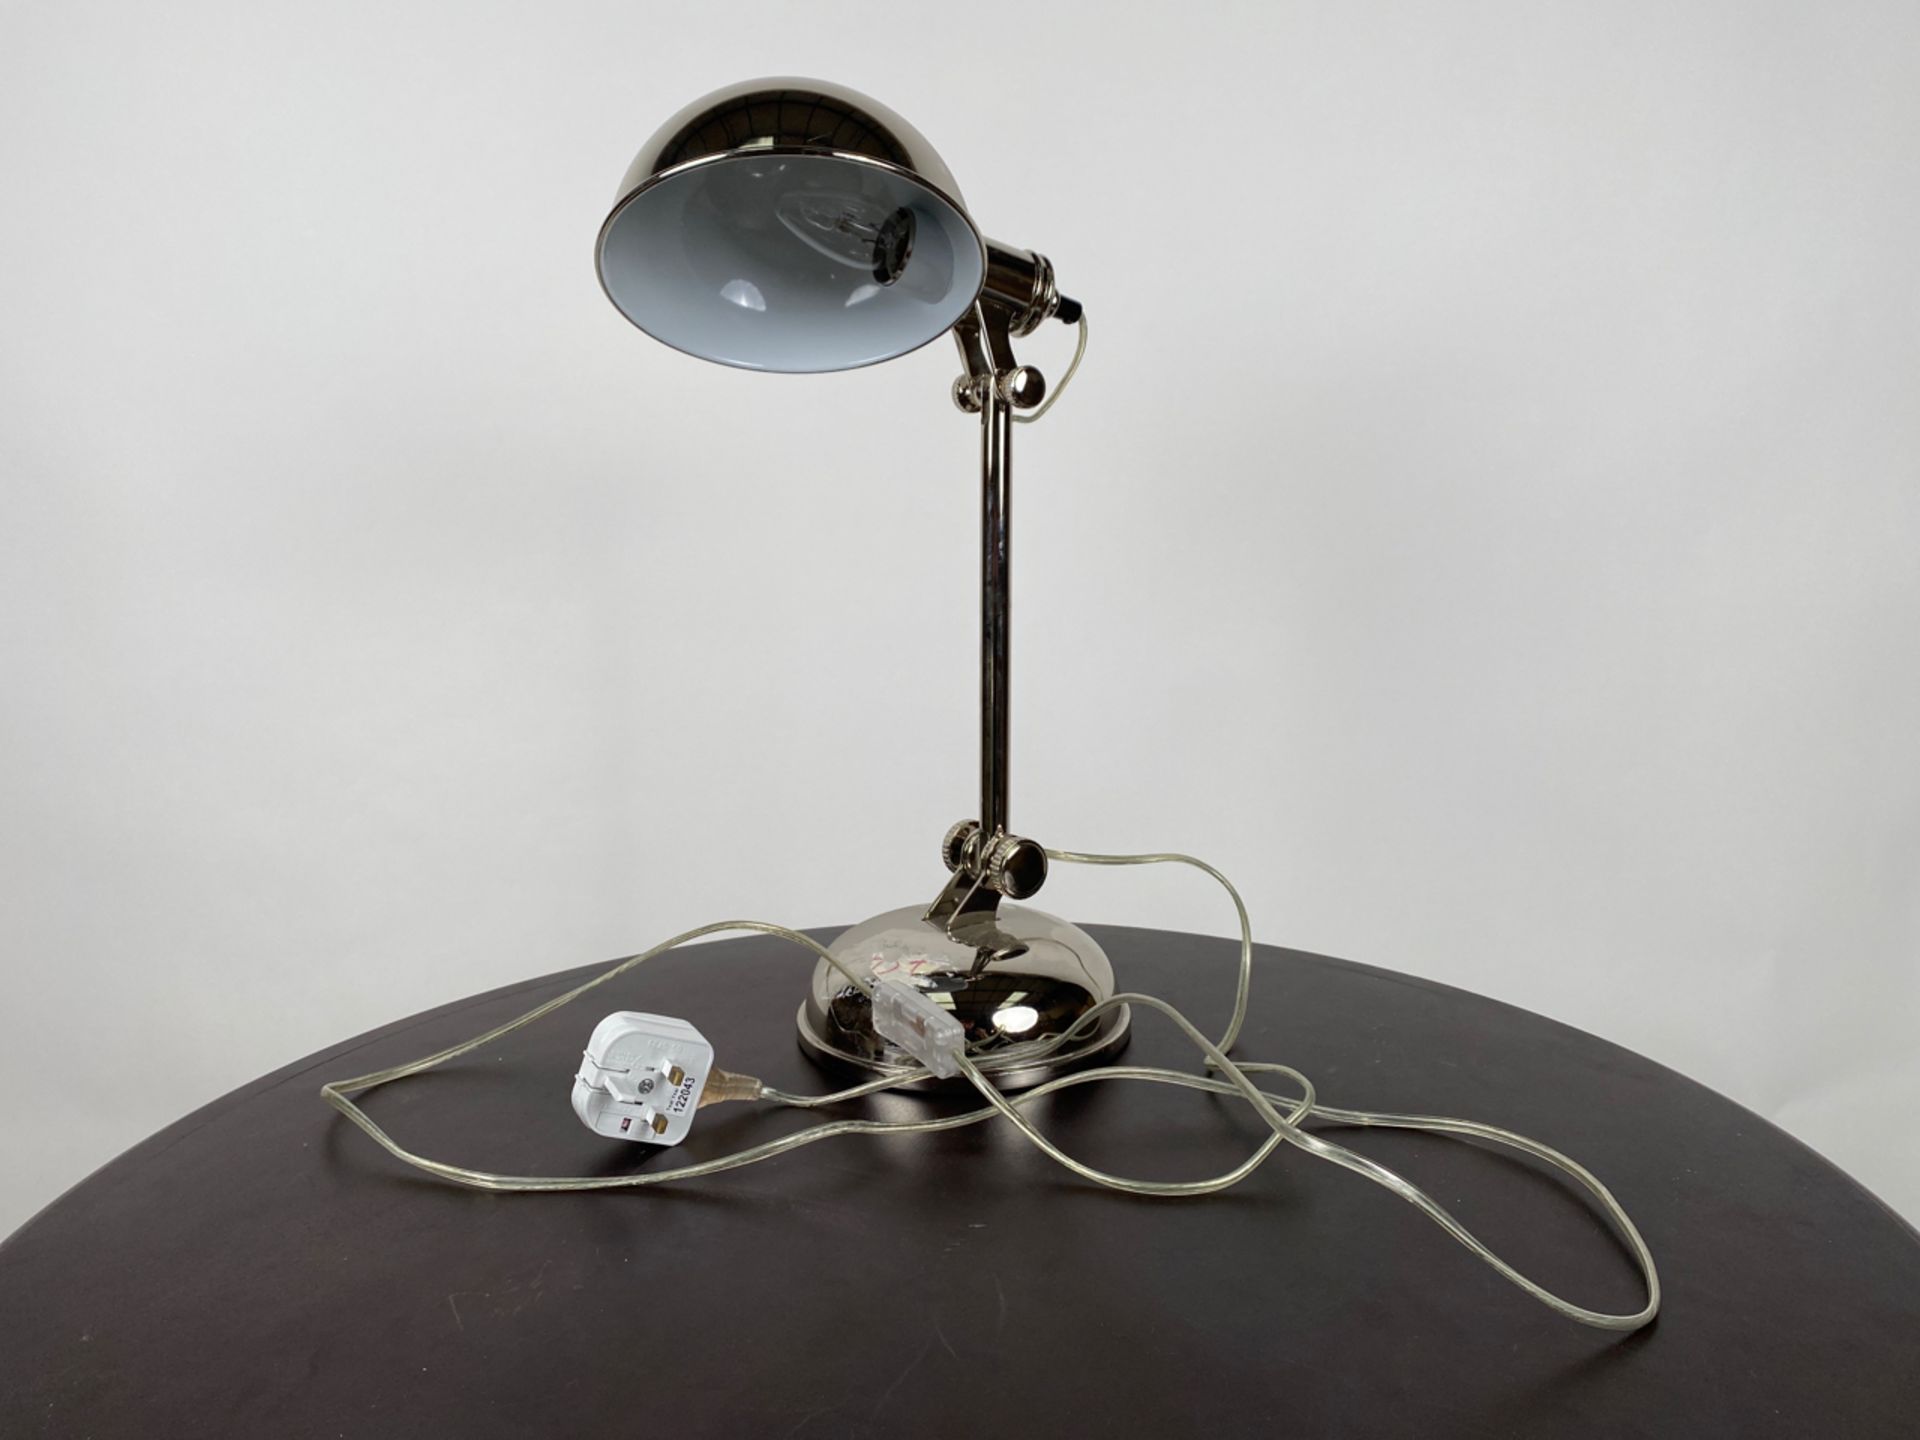 Ralph Lauren Table Lamp